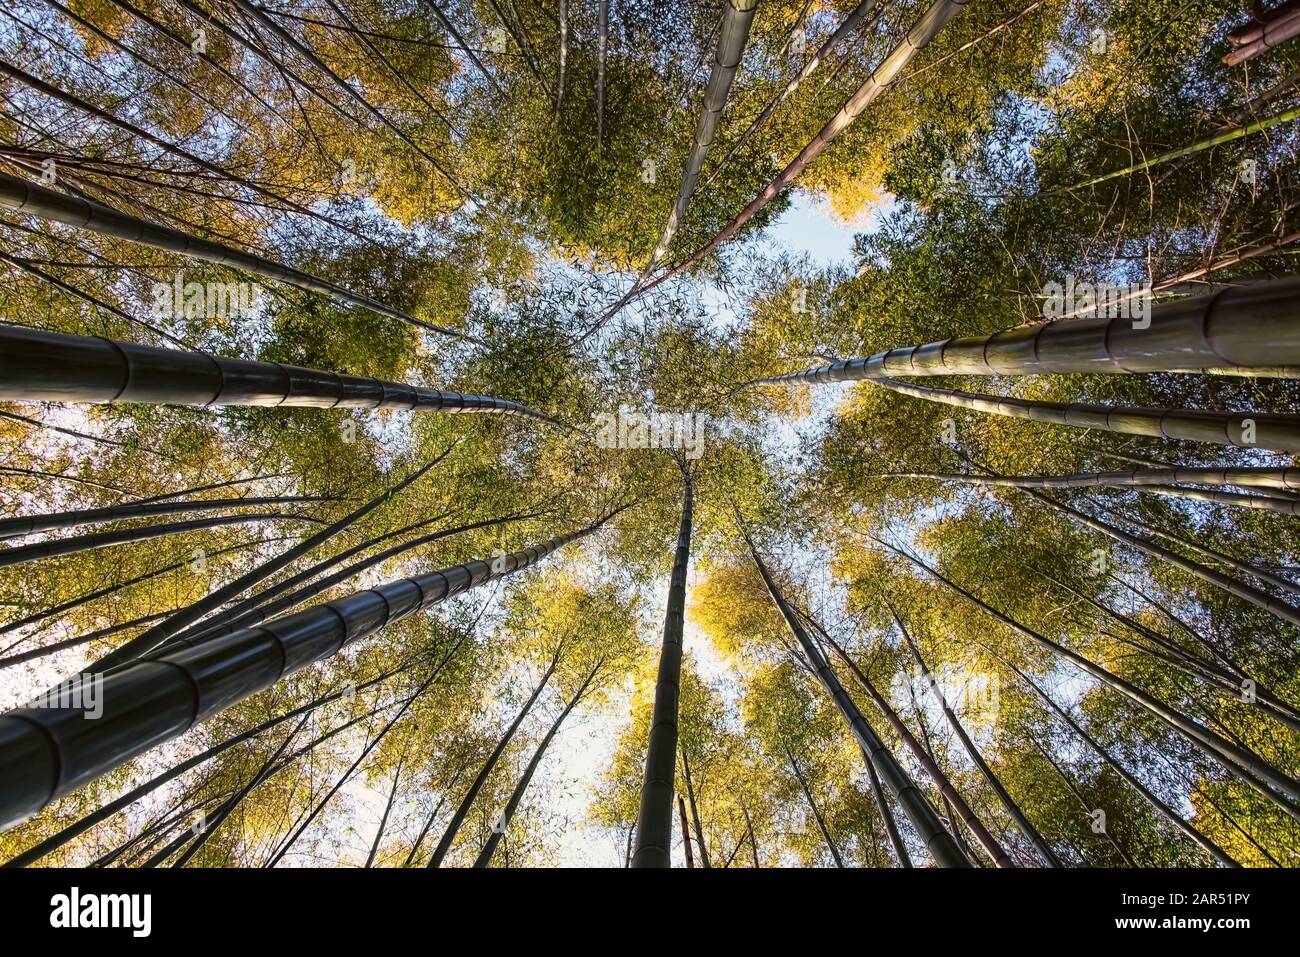 Bamboo grove in Arashiyama, Kyoto Stock Photo